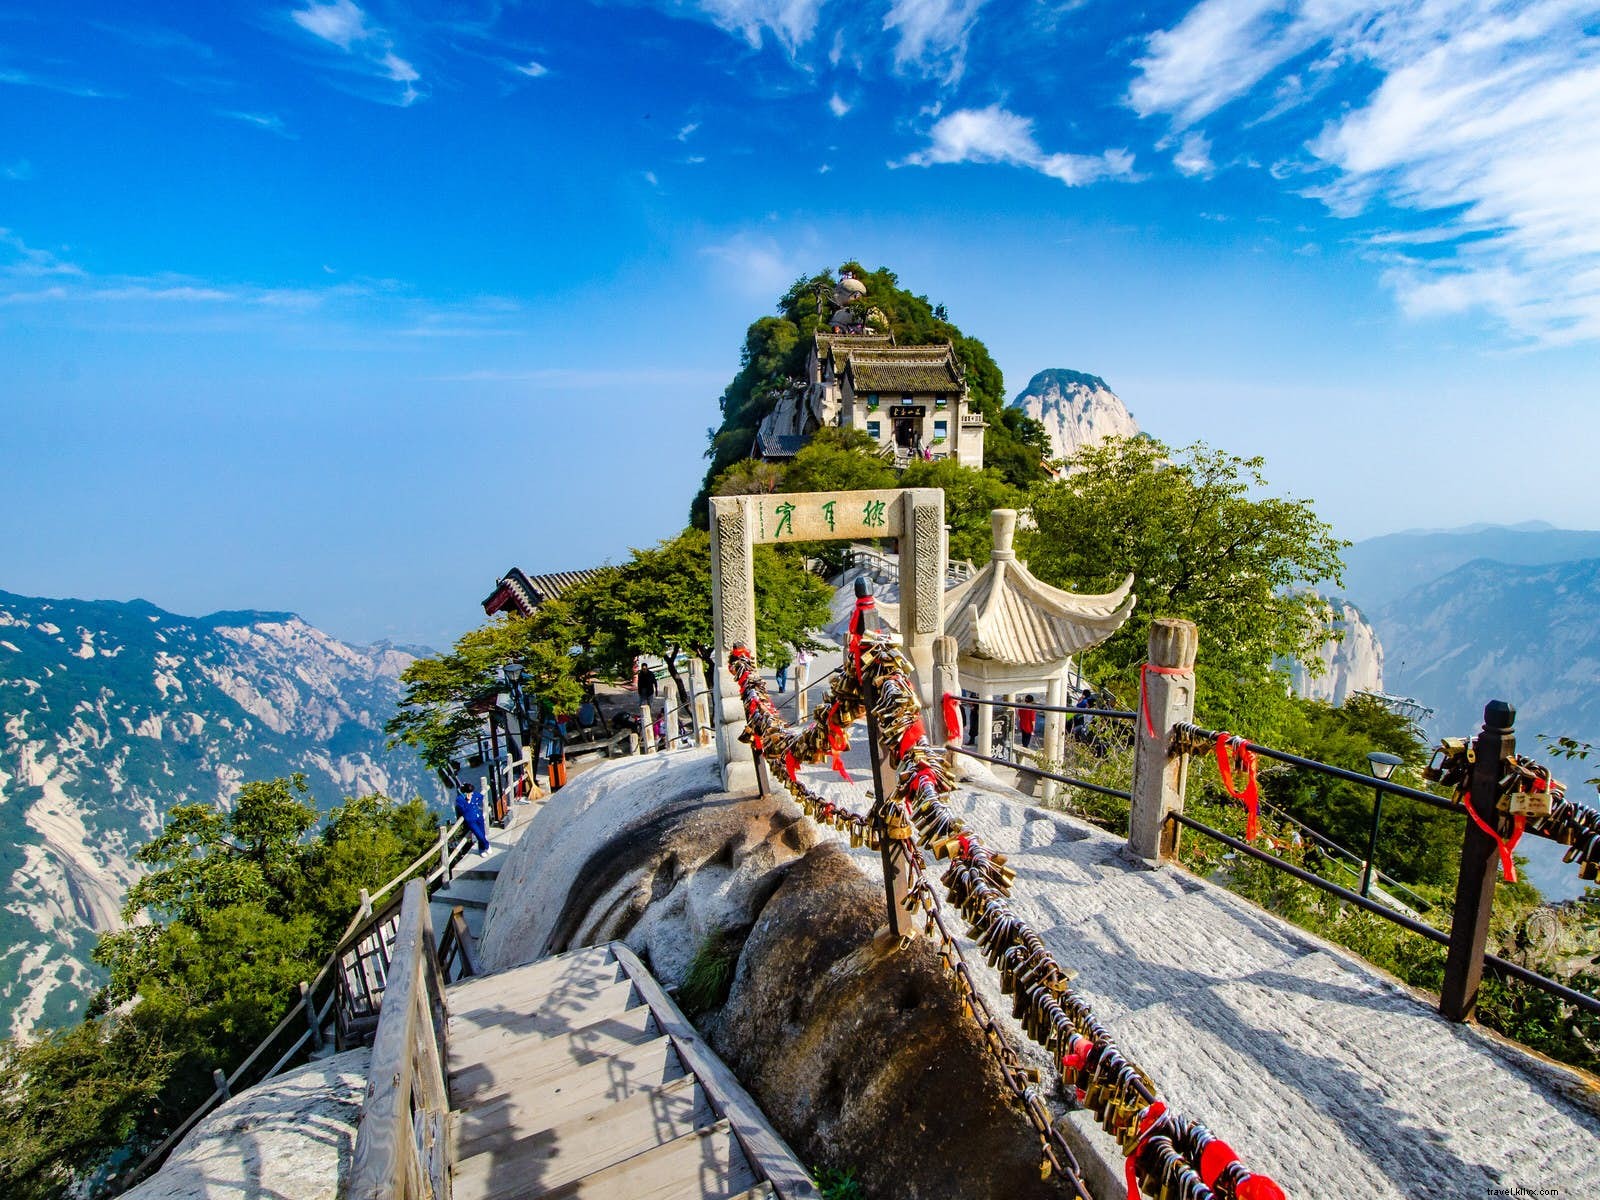 Fuga de Xi an:Caminhada Hua Shan, Pico sagrado taoísta da China 